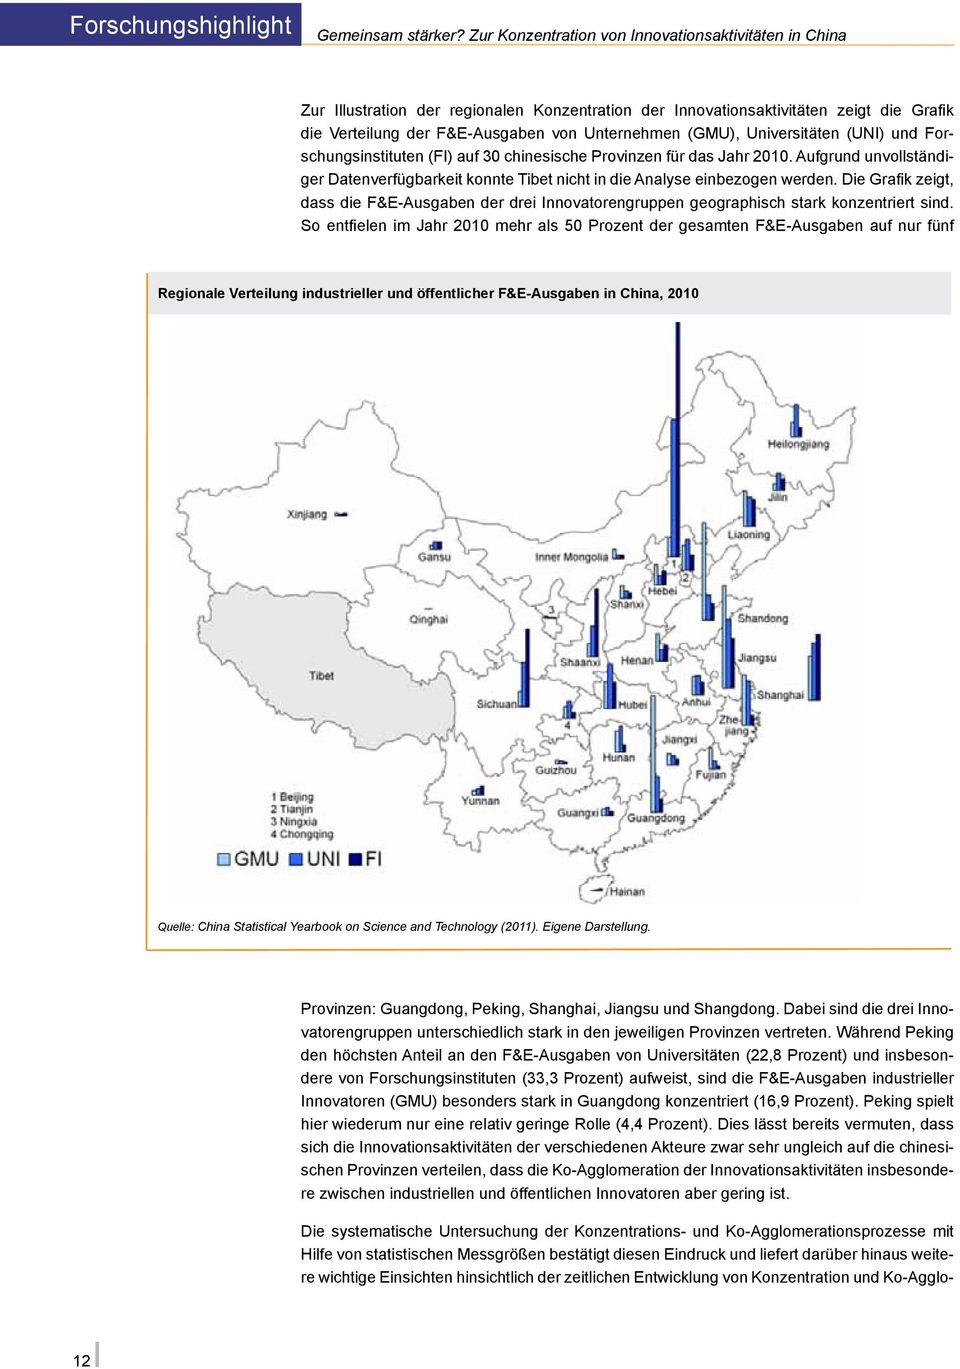 Universitäten (UNI) und Forschungsinstituten (FI) auf 30 chinesische Provinzen für das Jahr 2010. Aufgrund unvollständiger Datenverfügbarkeit konnte Tibet nicht in die Analyse einbezogen werden.